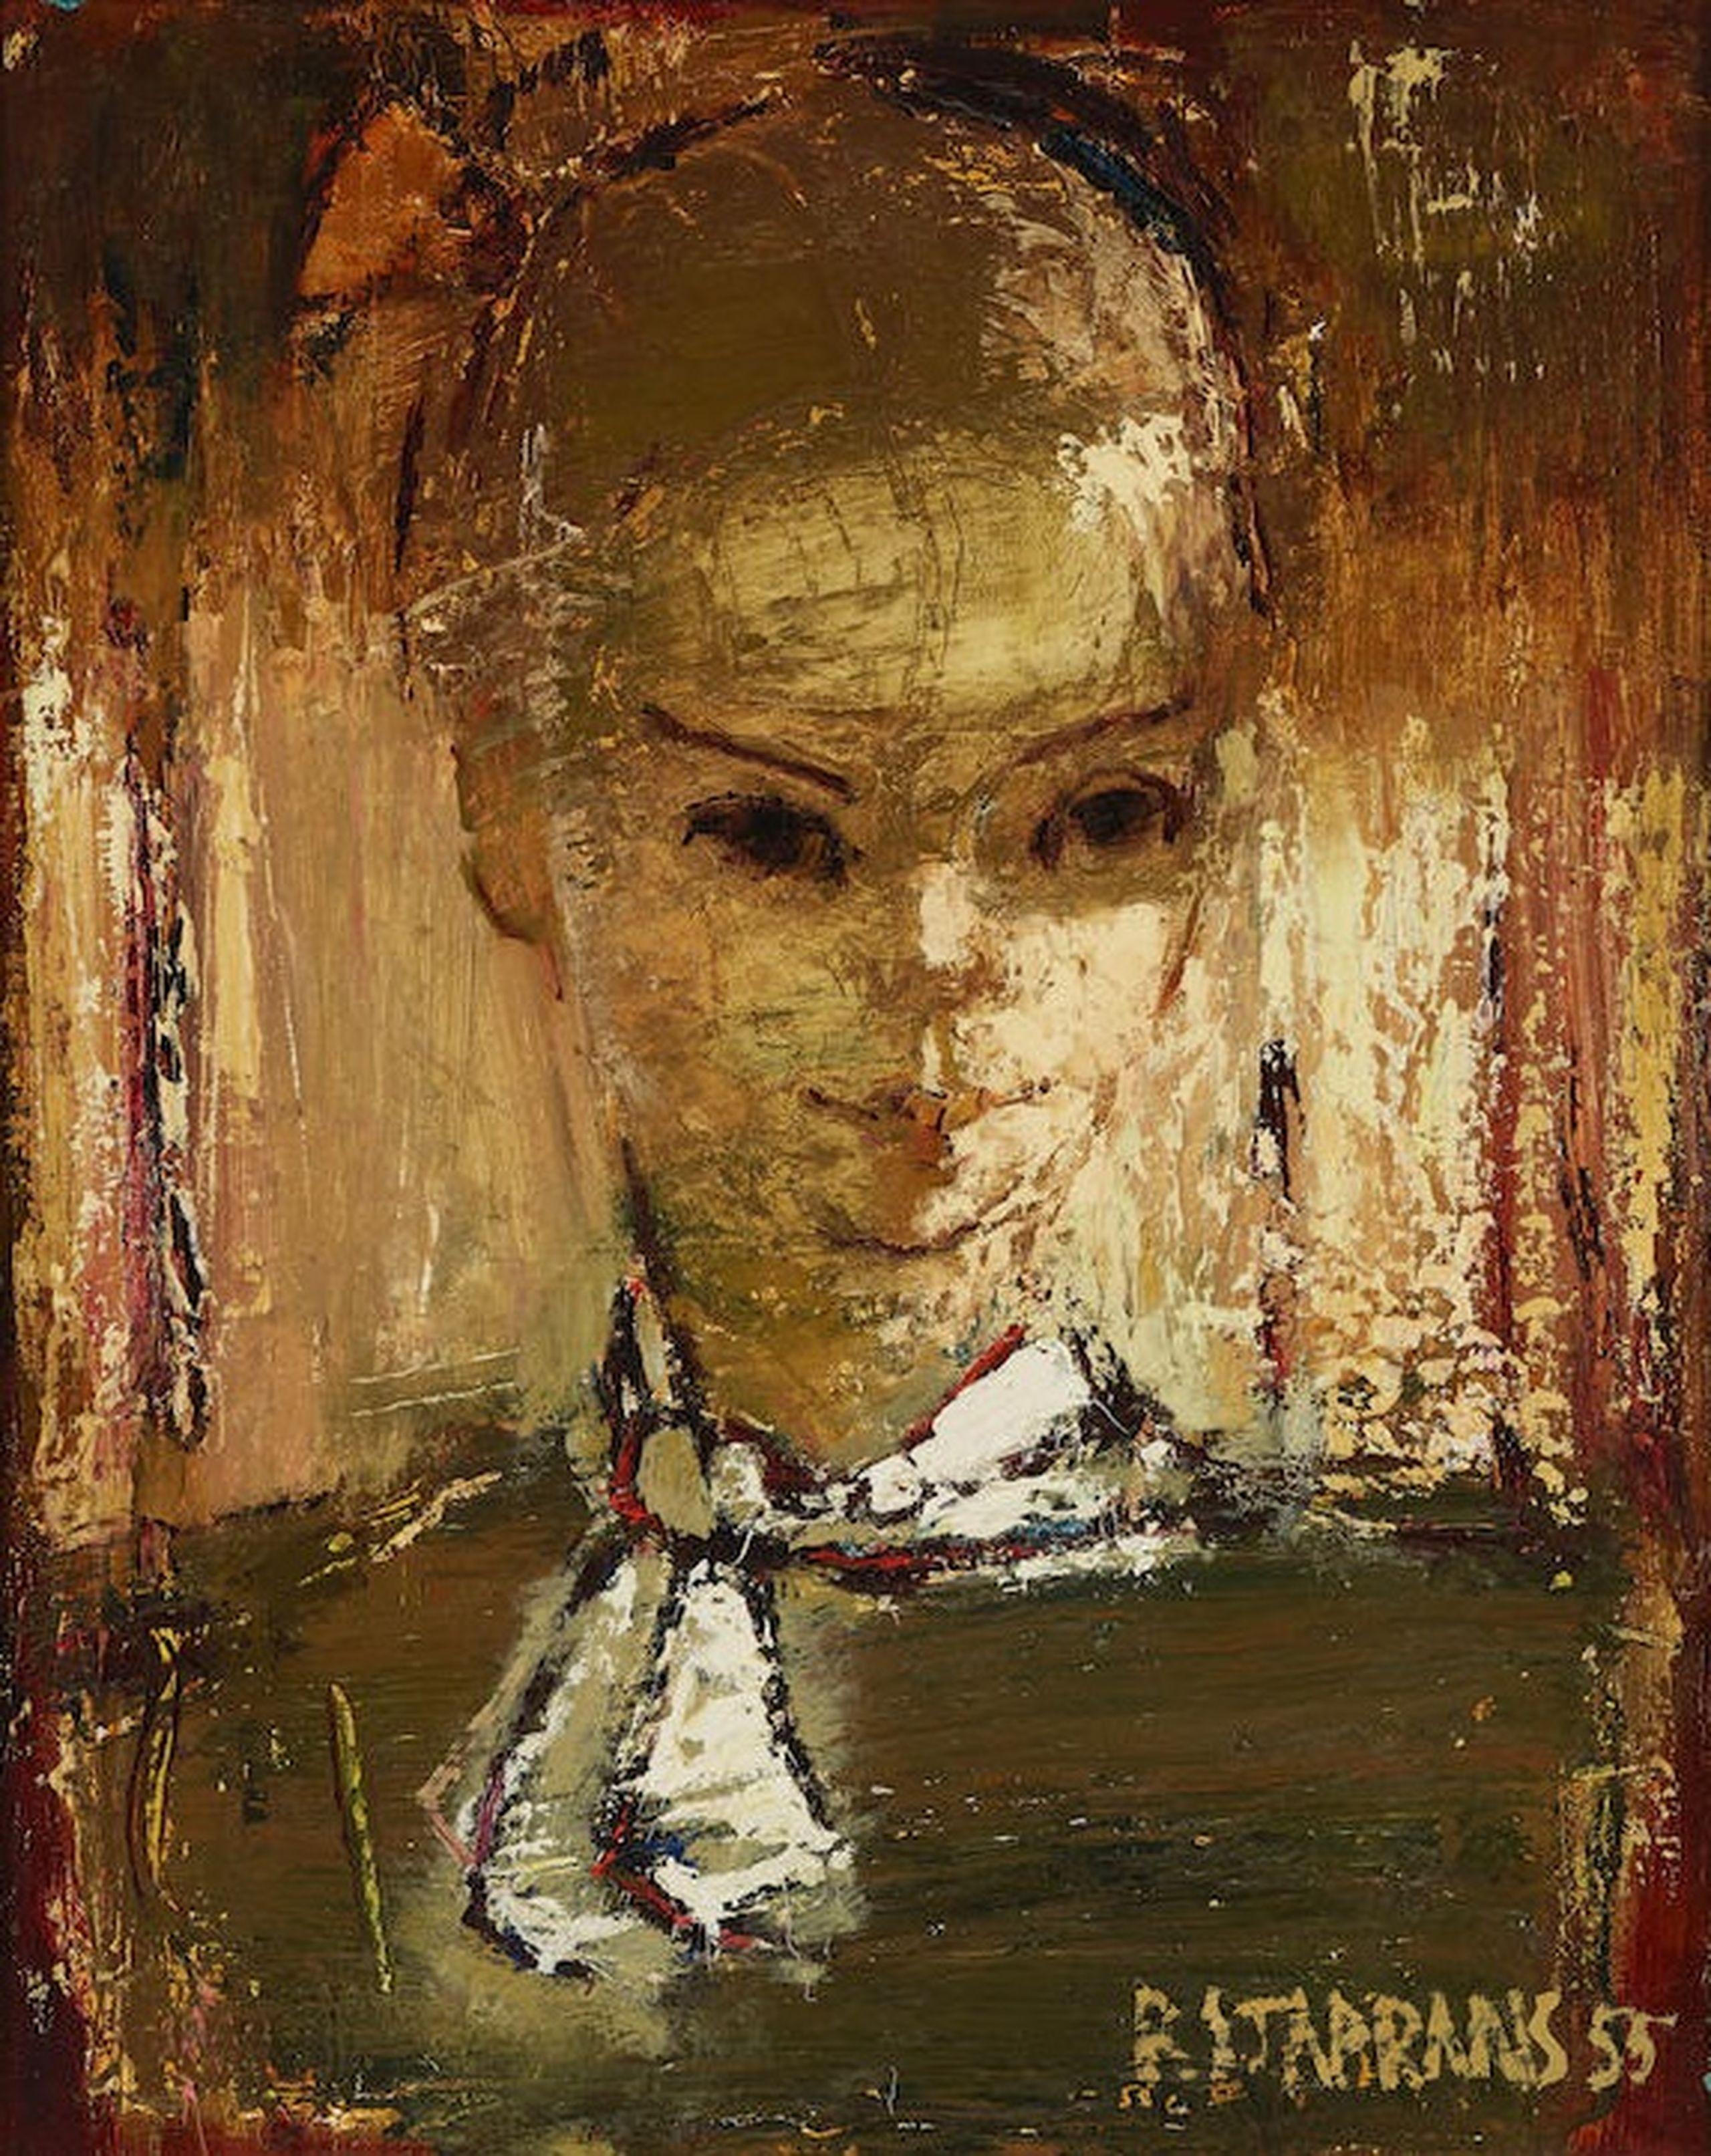 Raimonds Staprаns  Portrait Painting - Woman portrait. 1955, oil on canvas, 50.8 x 40.6 cm